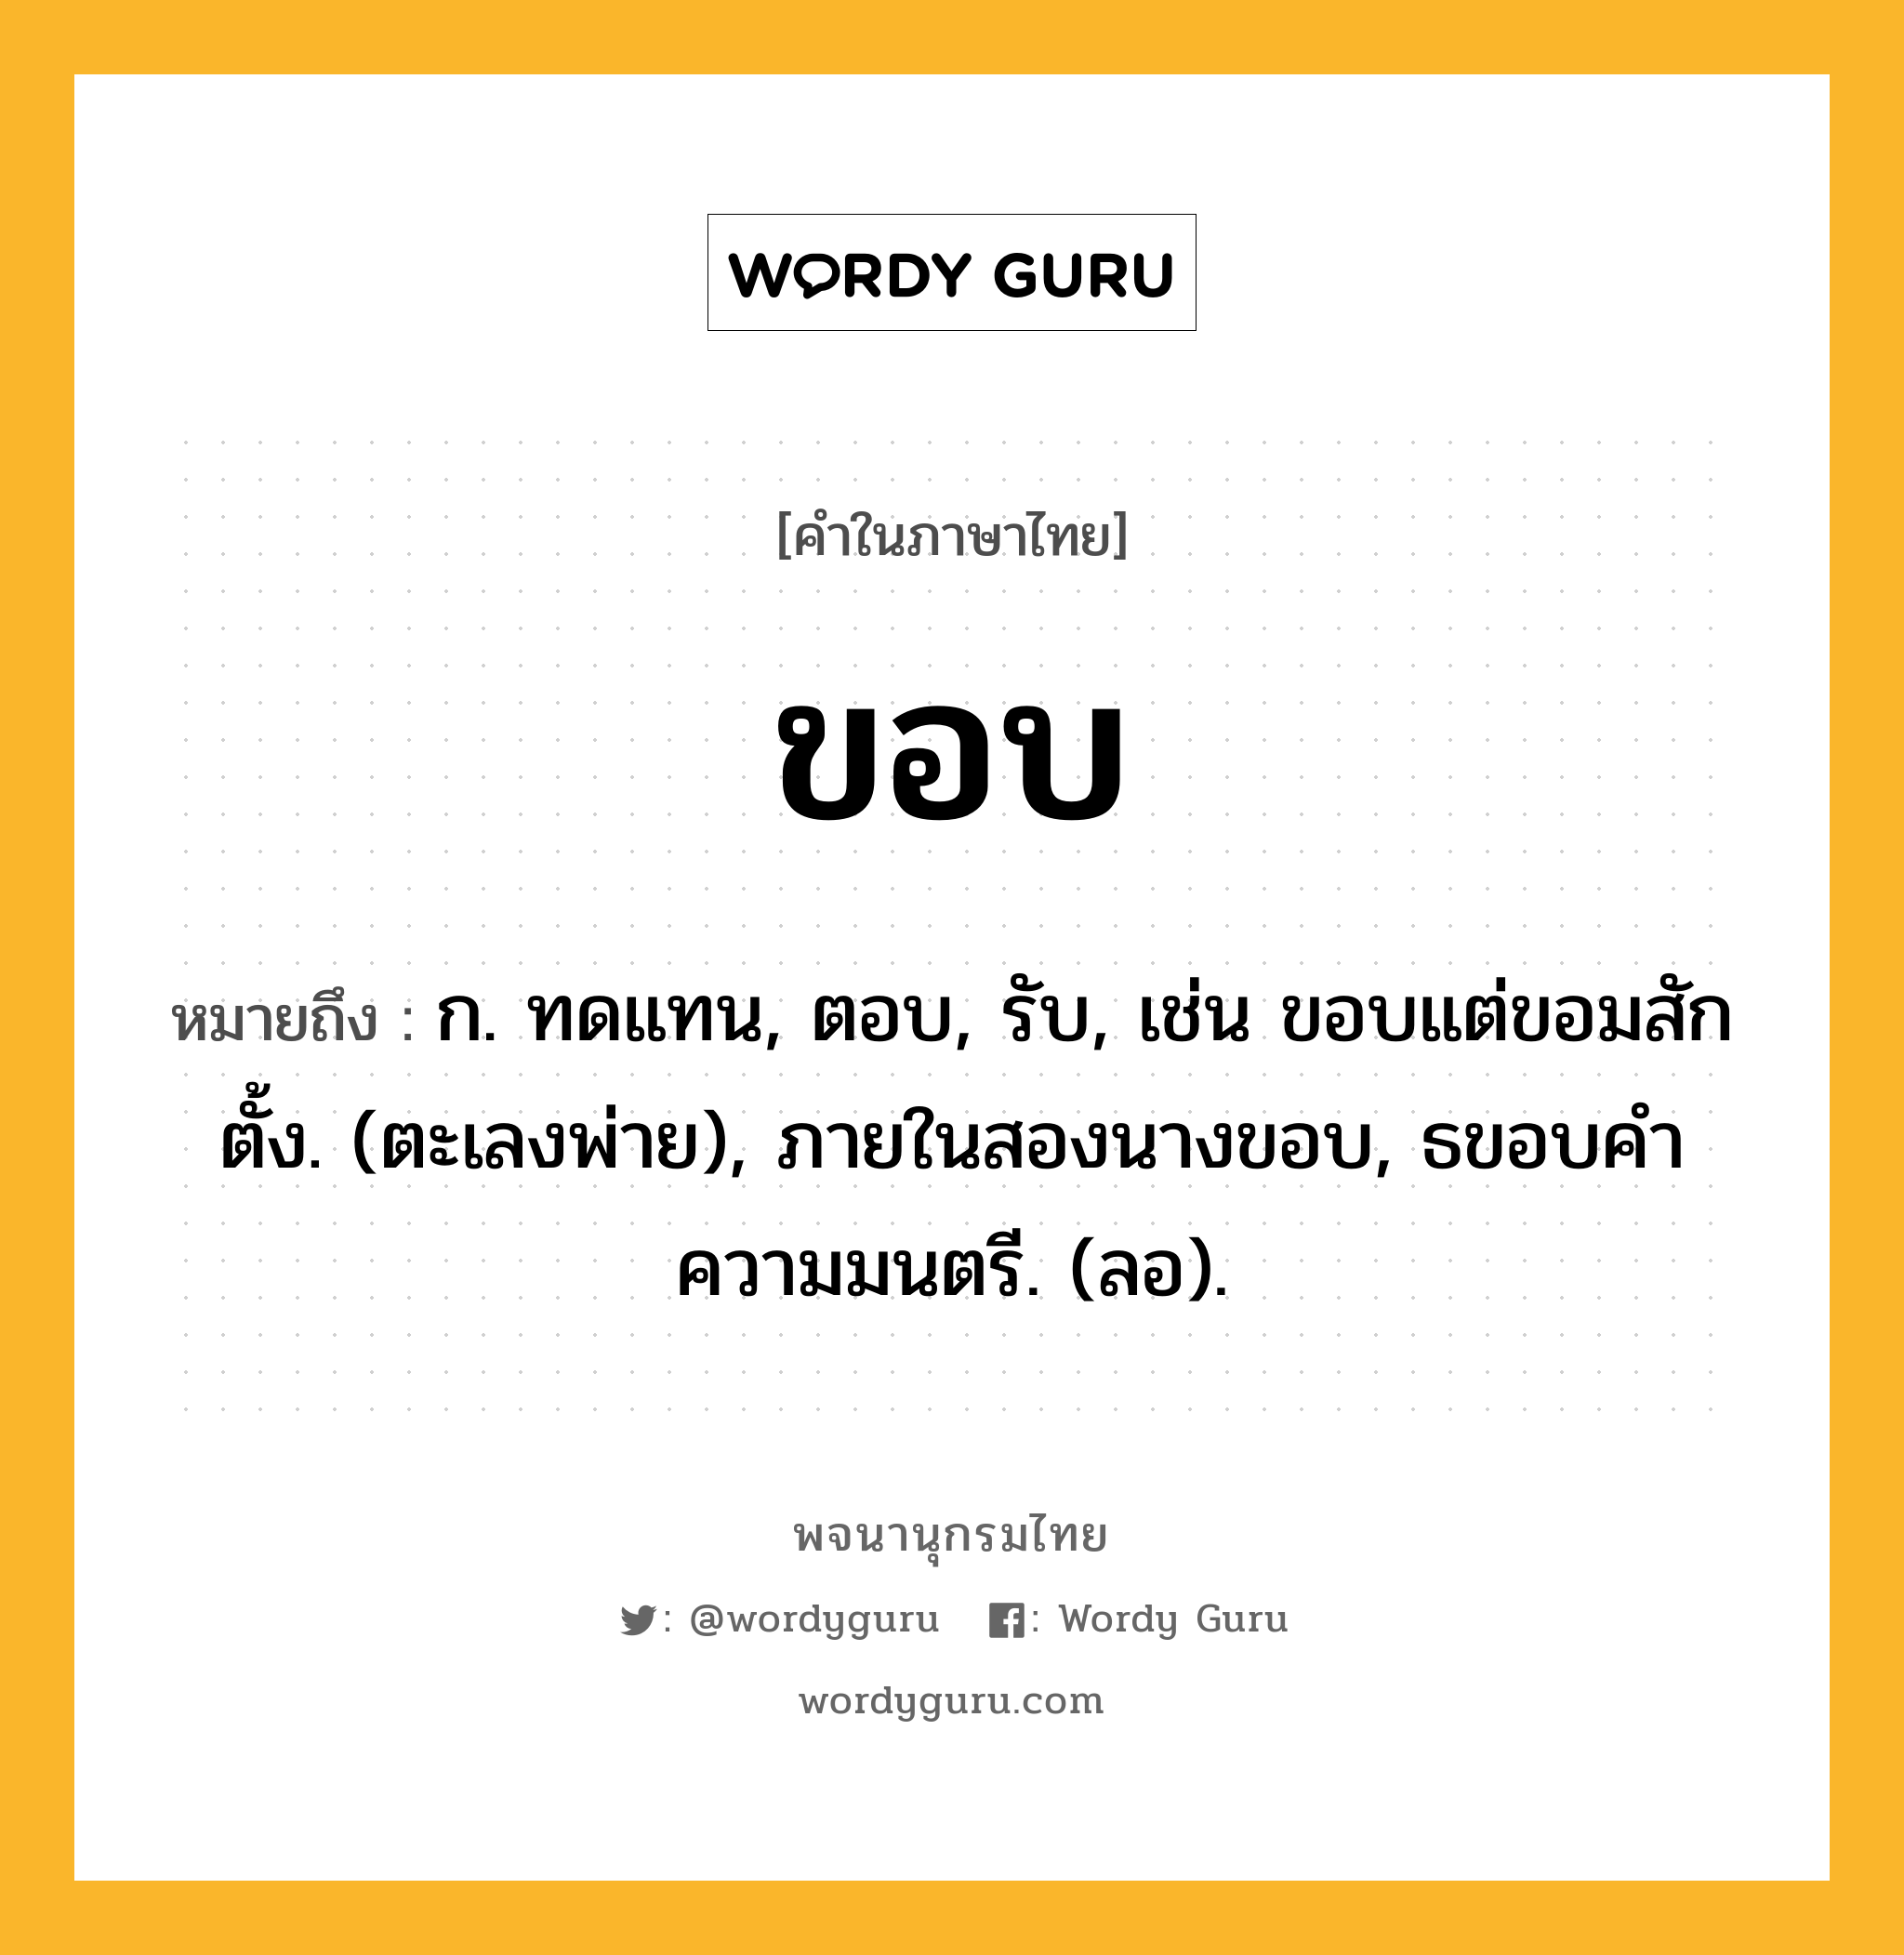 ขอบ ความหมาย หมายถึงอะไร?, คำในภาษาไทย ขอบ หมายถึง ก. ทดแทน, ตอบ, รับ, เช่น ขอบแต่ขอมสักตั้ง. (ตะเลงพ่าย), ภายในสองนางขอบ, ธขอบคําความมนตรี. (ลอ).